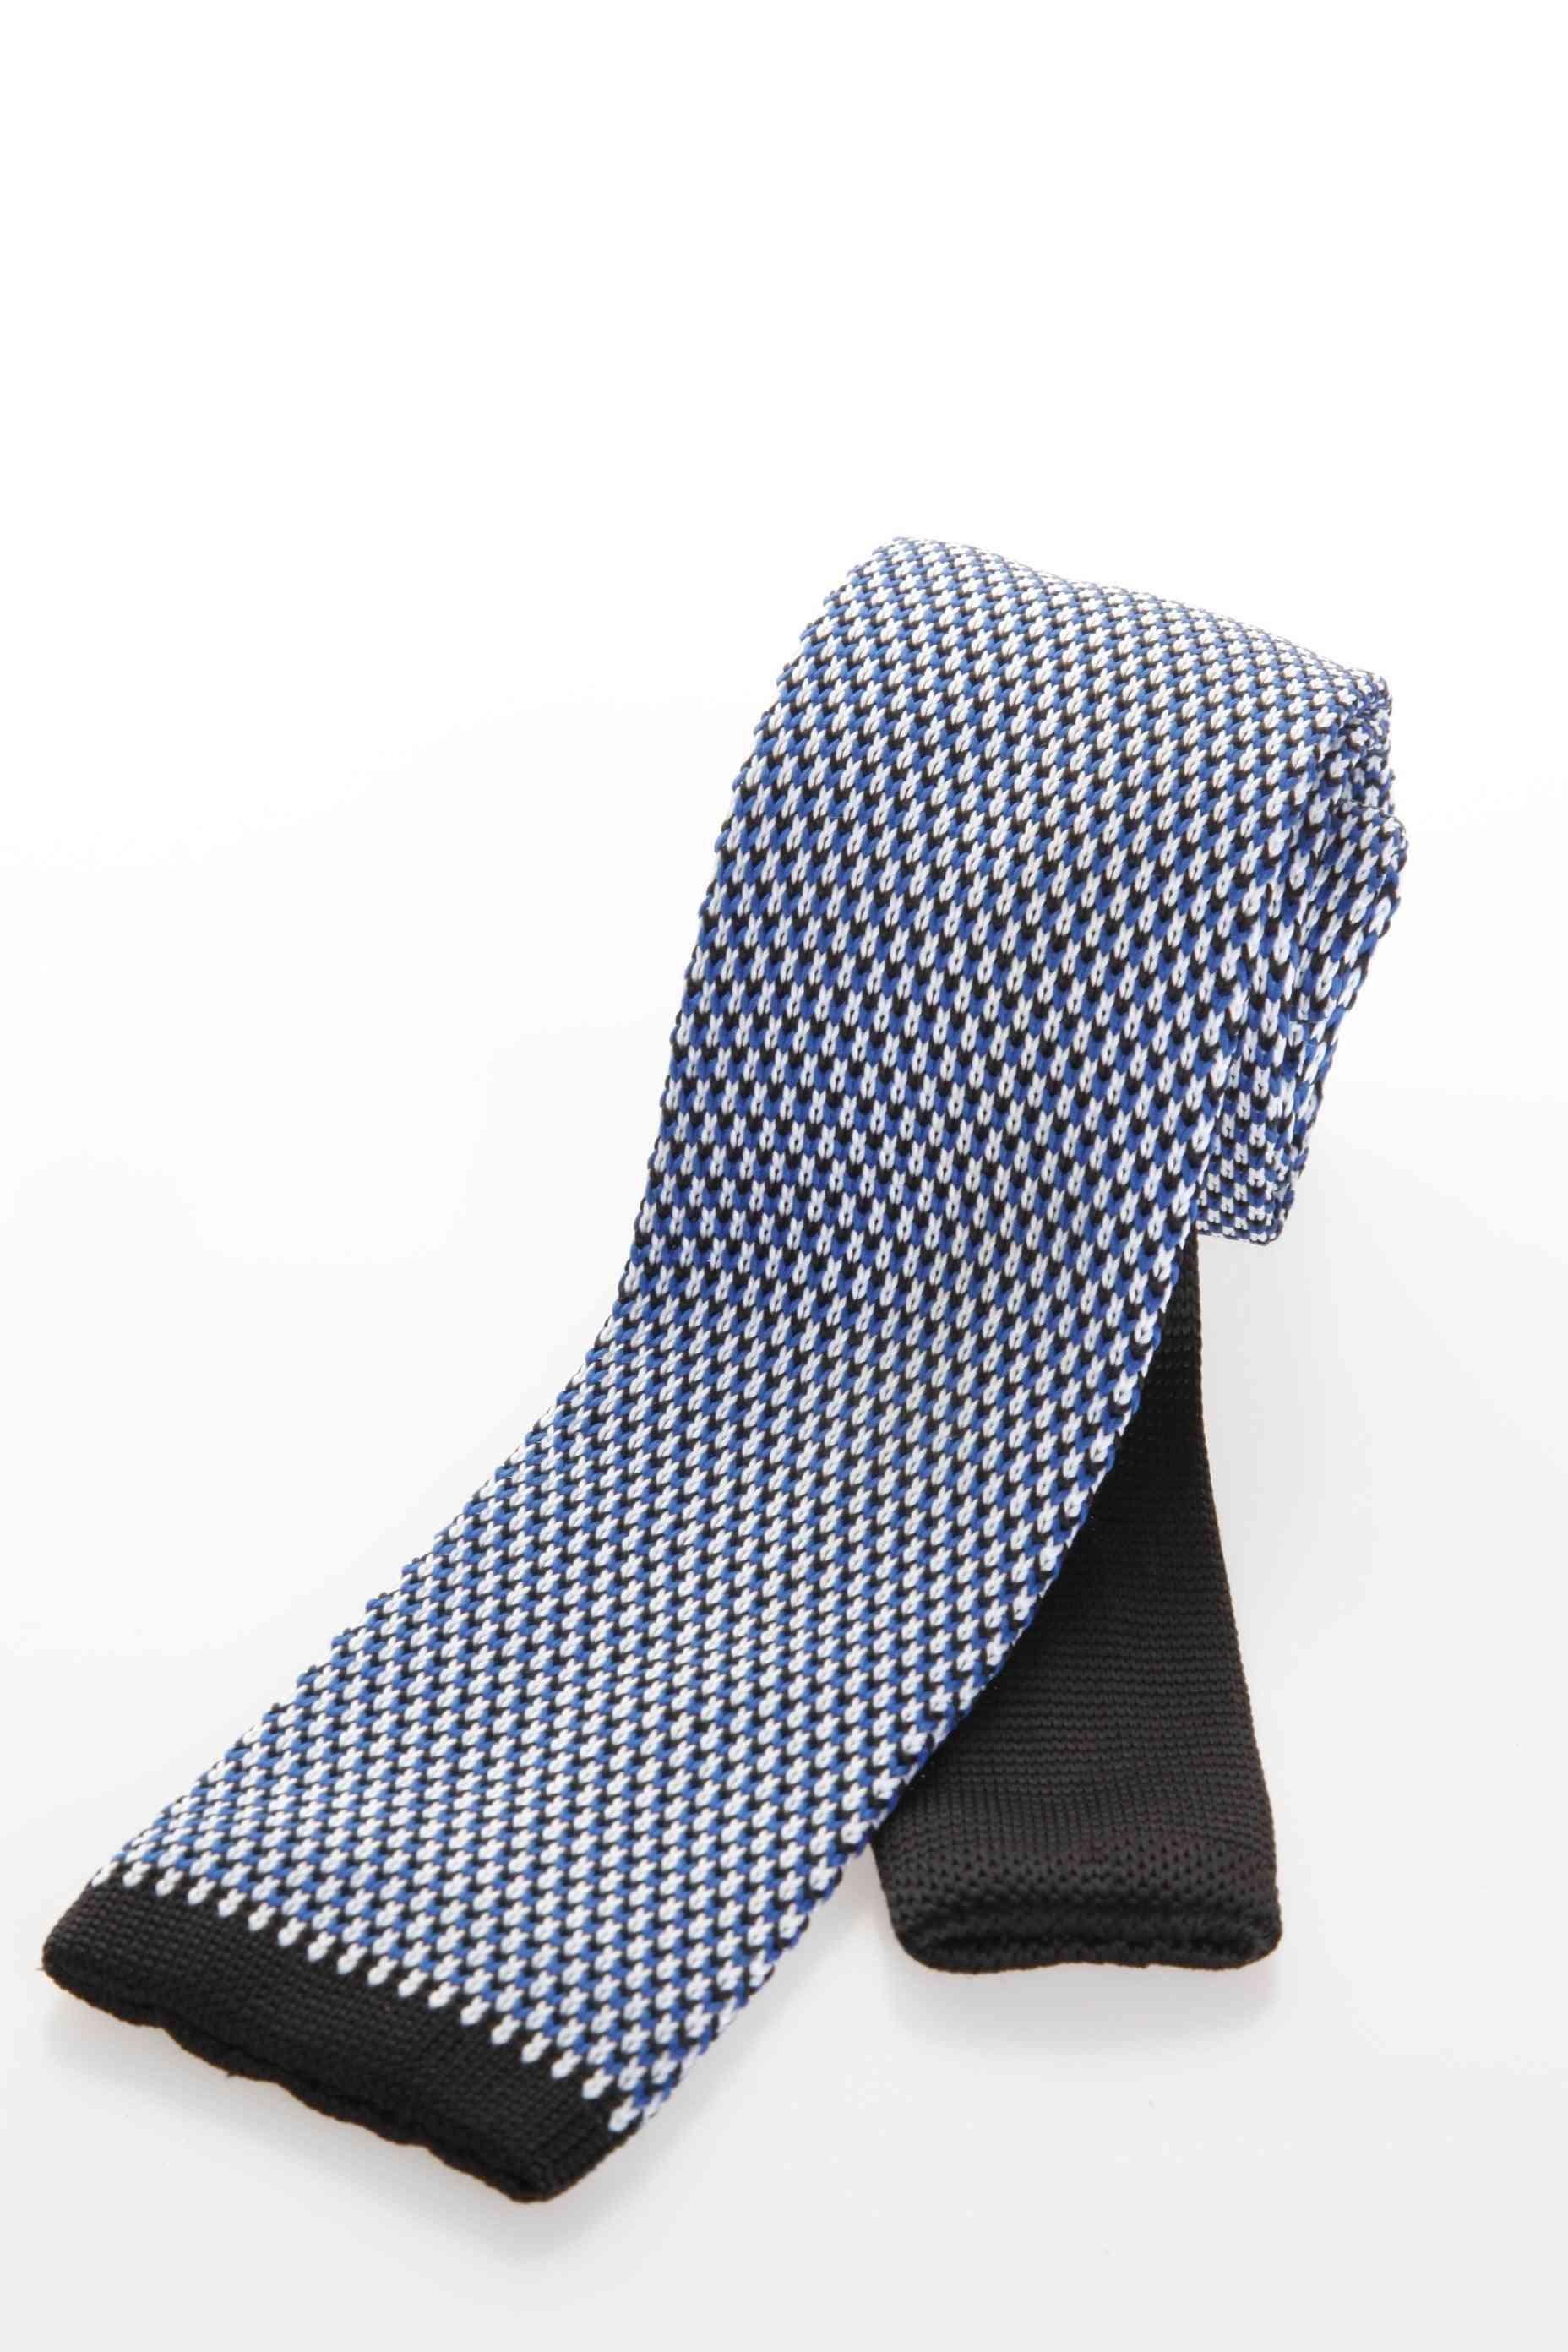 Cravatta in maglia elegante ed elegante